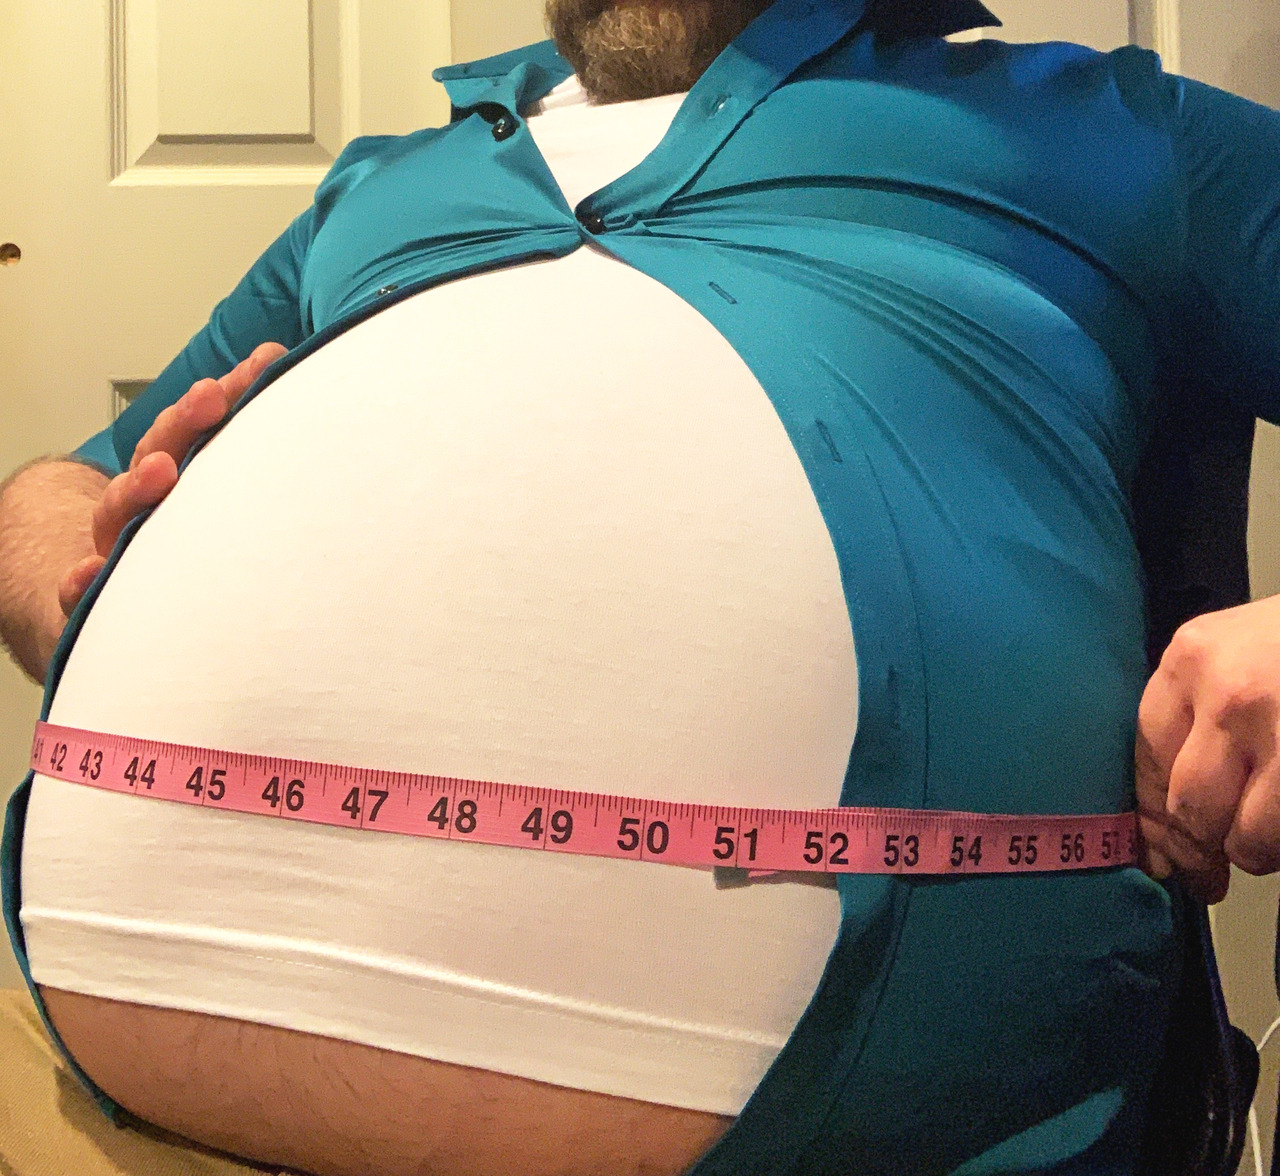 Fat round belly